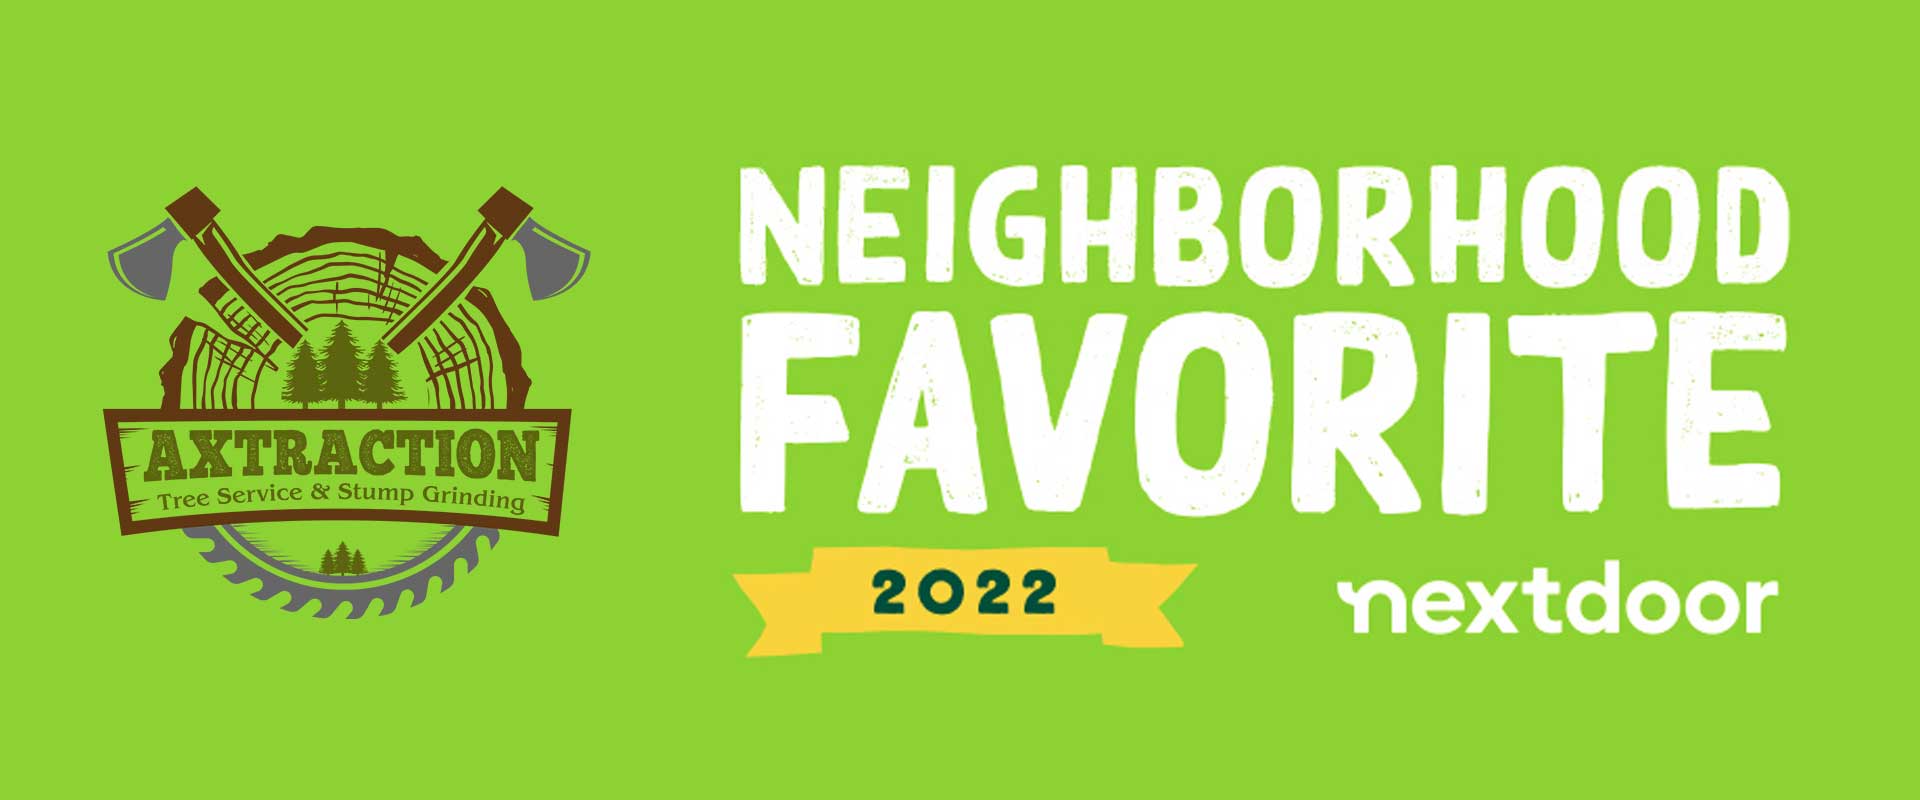 Axtraction Named a NextDoor 2022 Neighborhood Favorite Local Business